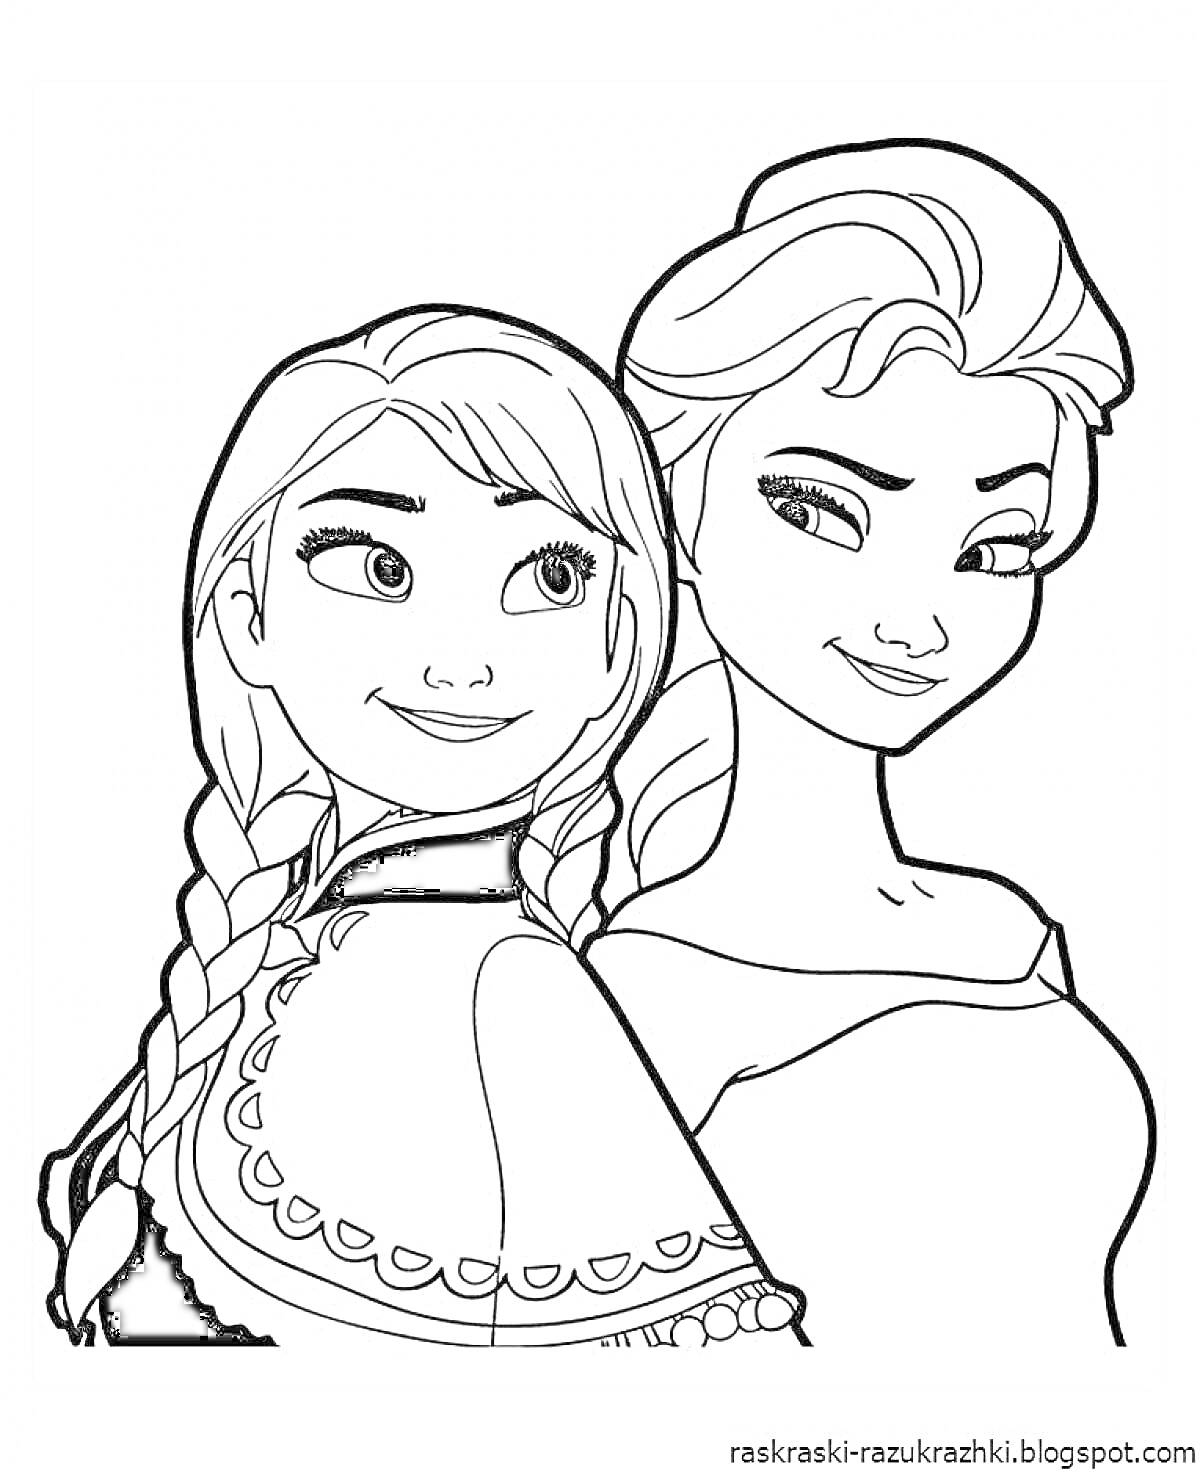 Раскраска Анимационные девушки с косами и завитыми волосами, стоящие спина к спине